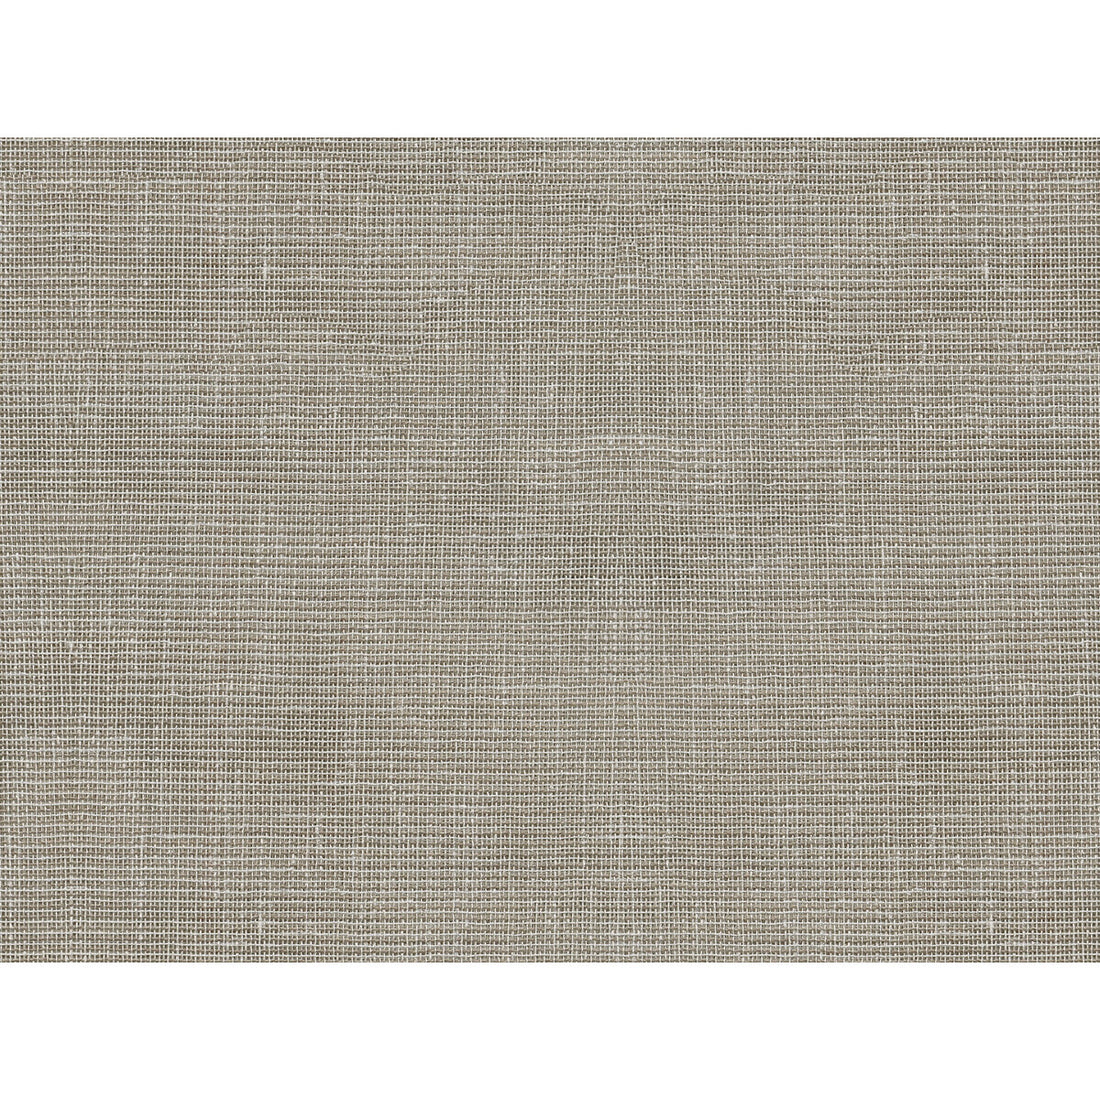 Kravet Basics fabric in 4496-16 color - pattern 4496.16.0 - by Kravet Basics